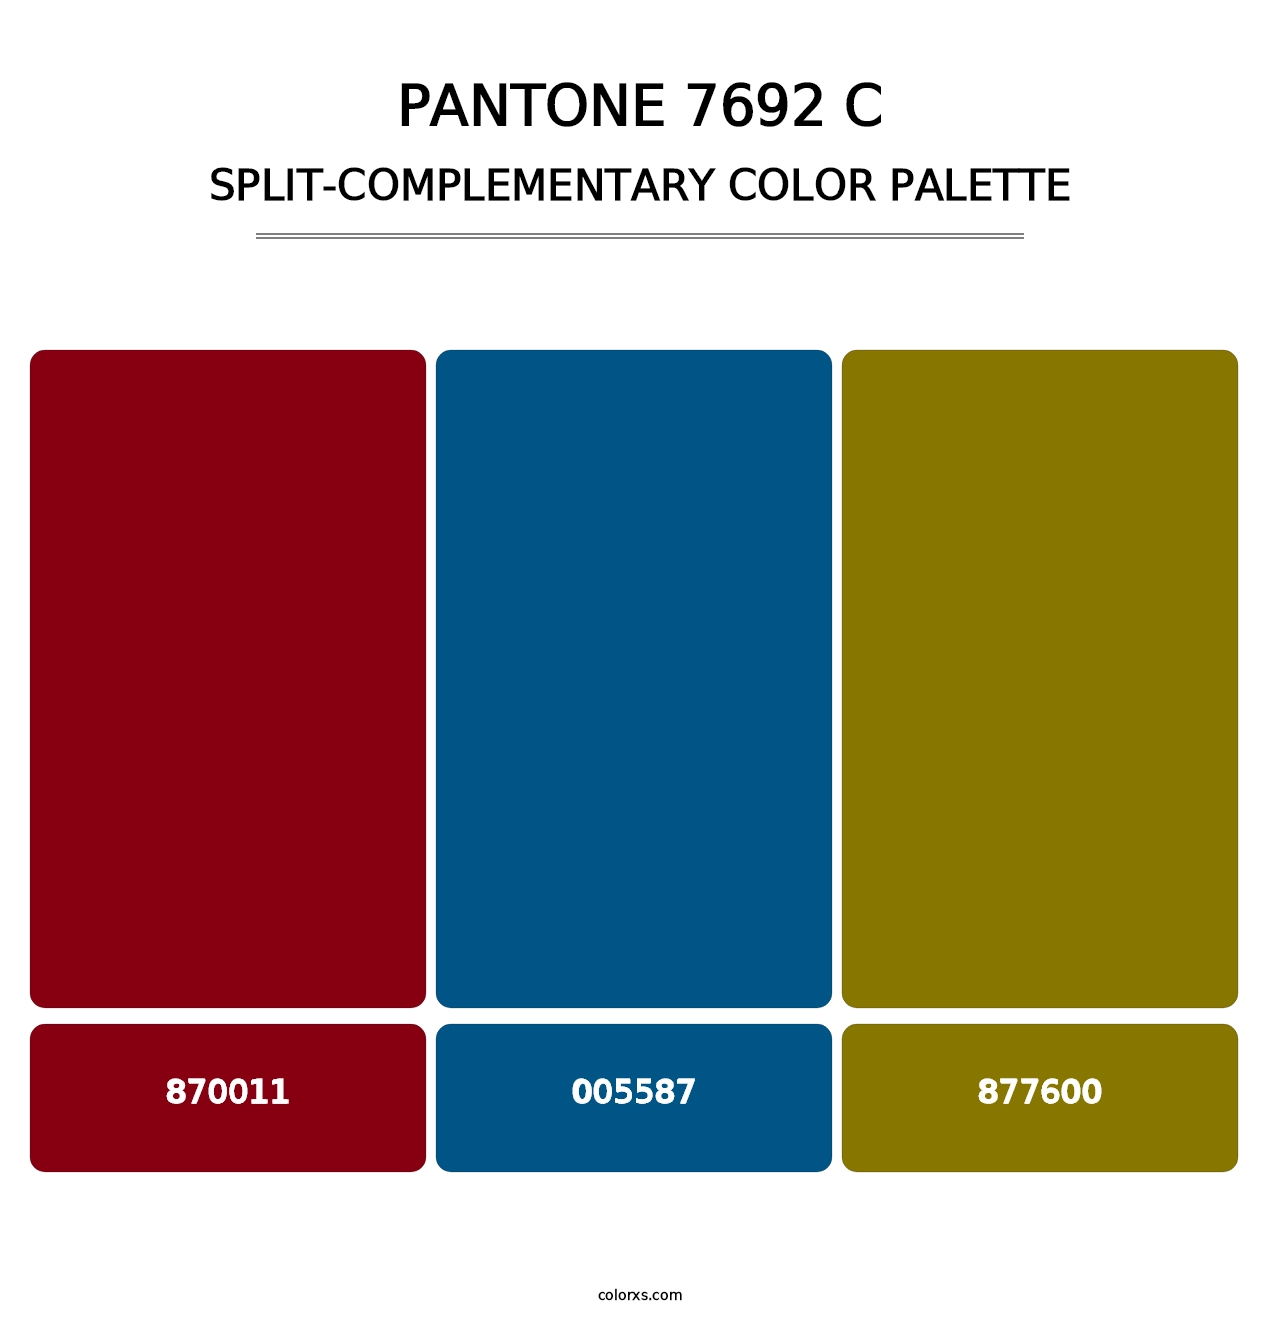 PANTONE 7692 C - Split-Complementary Color Palette